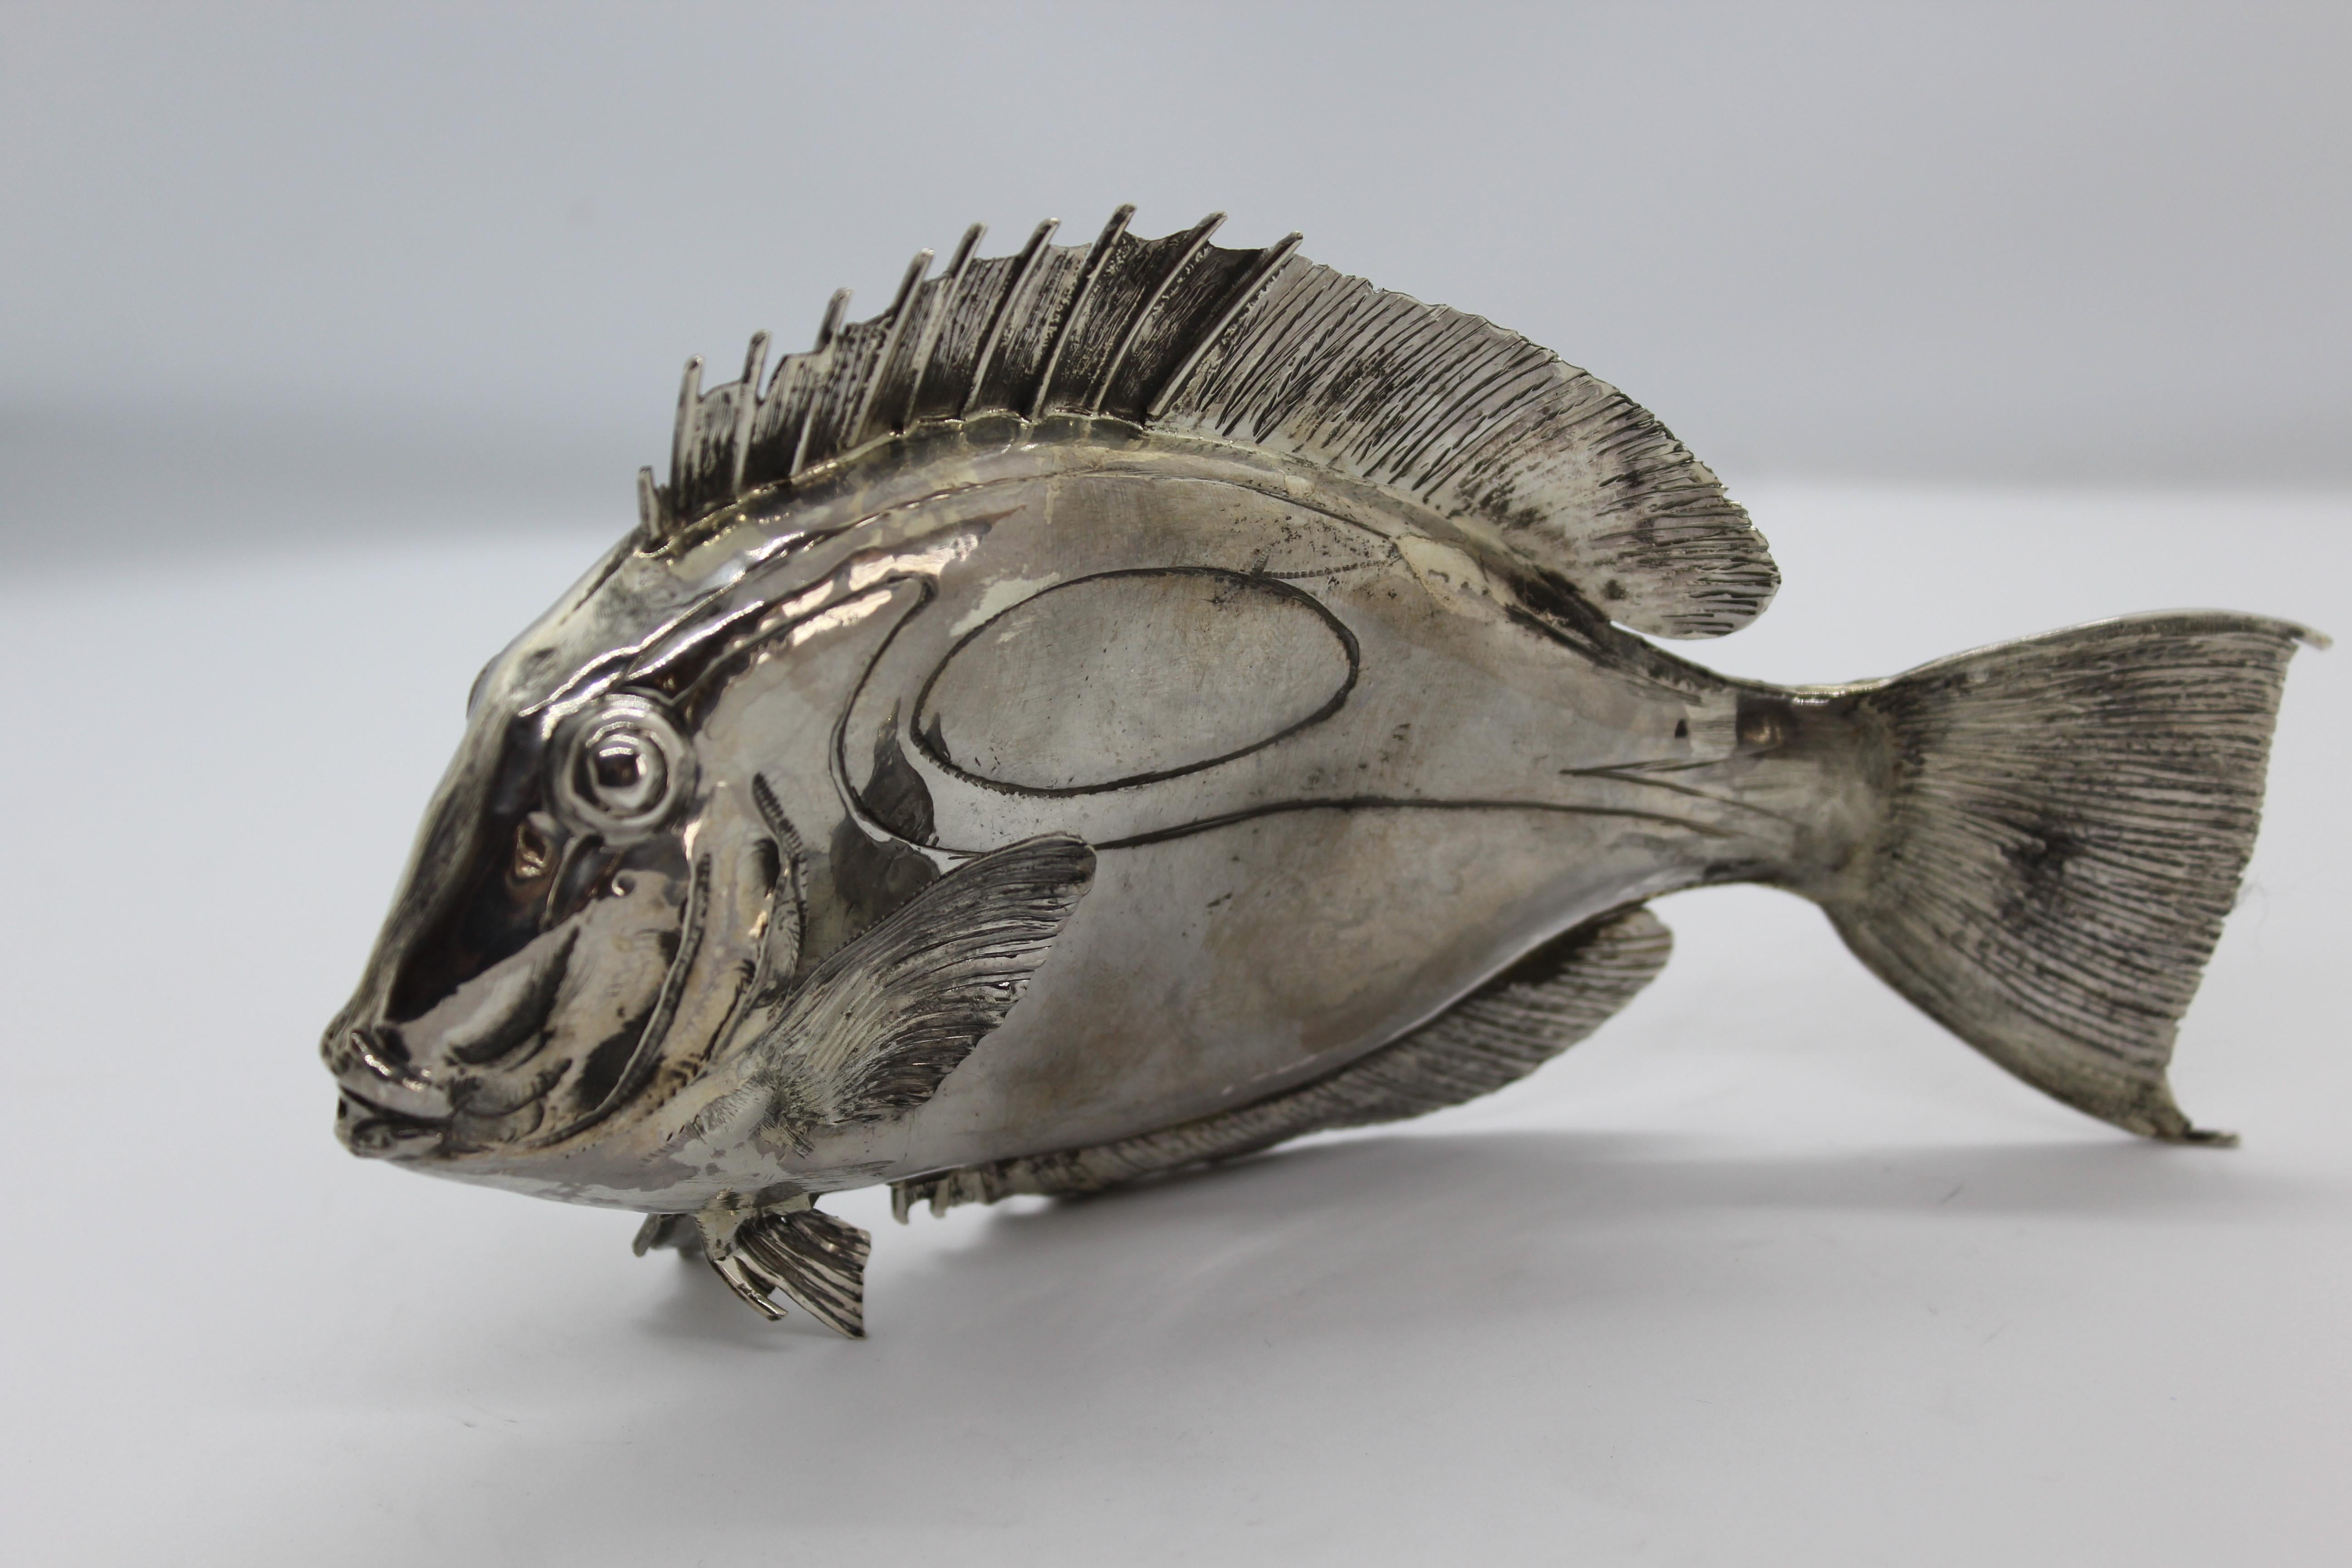 Doris Fish Silver Ornament wird vollständig in Florenz, Italien, hergestellt.
Es gibt zwei Modelle, zwischen denen Sie wählen können.
Giuliano Foglia ist der Künstler, der dieses Stück aus reinem Silber ziseliert hat.

